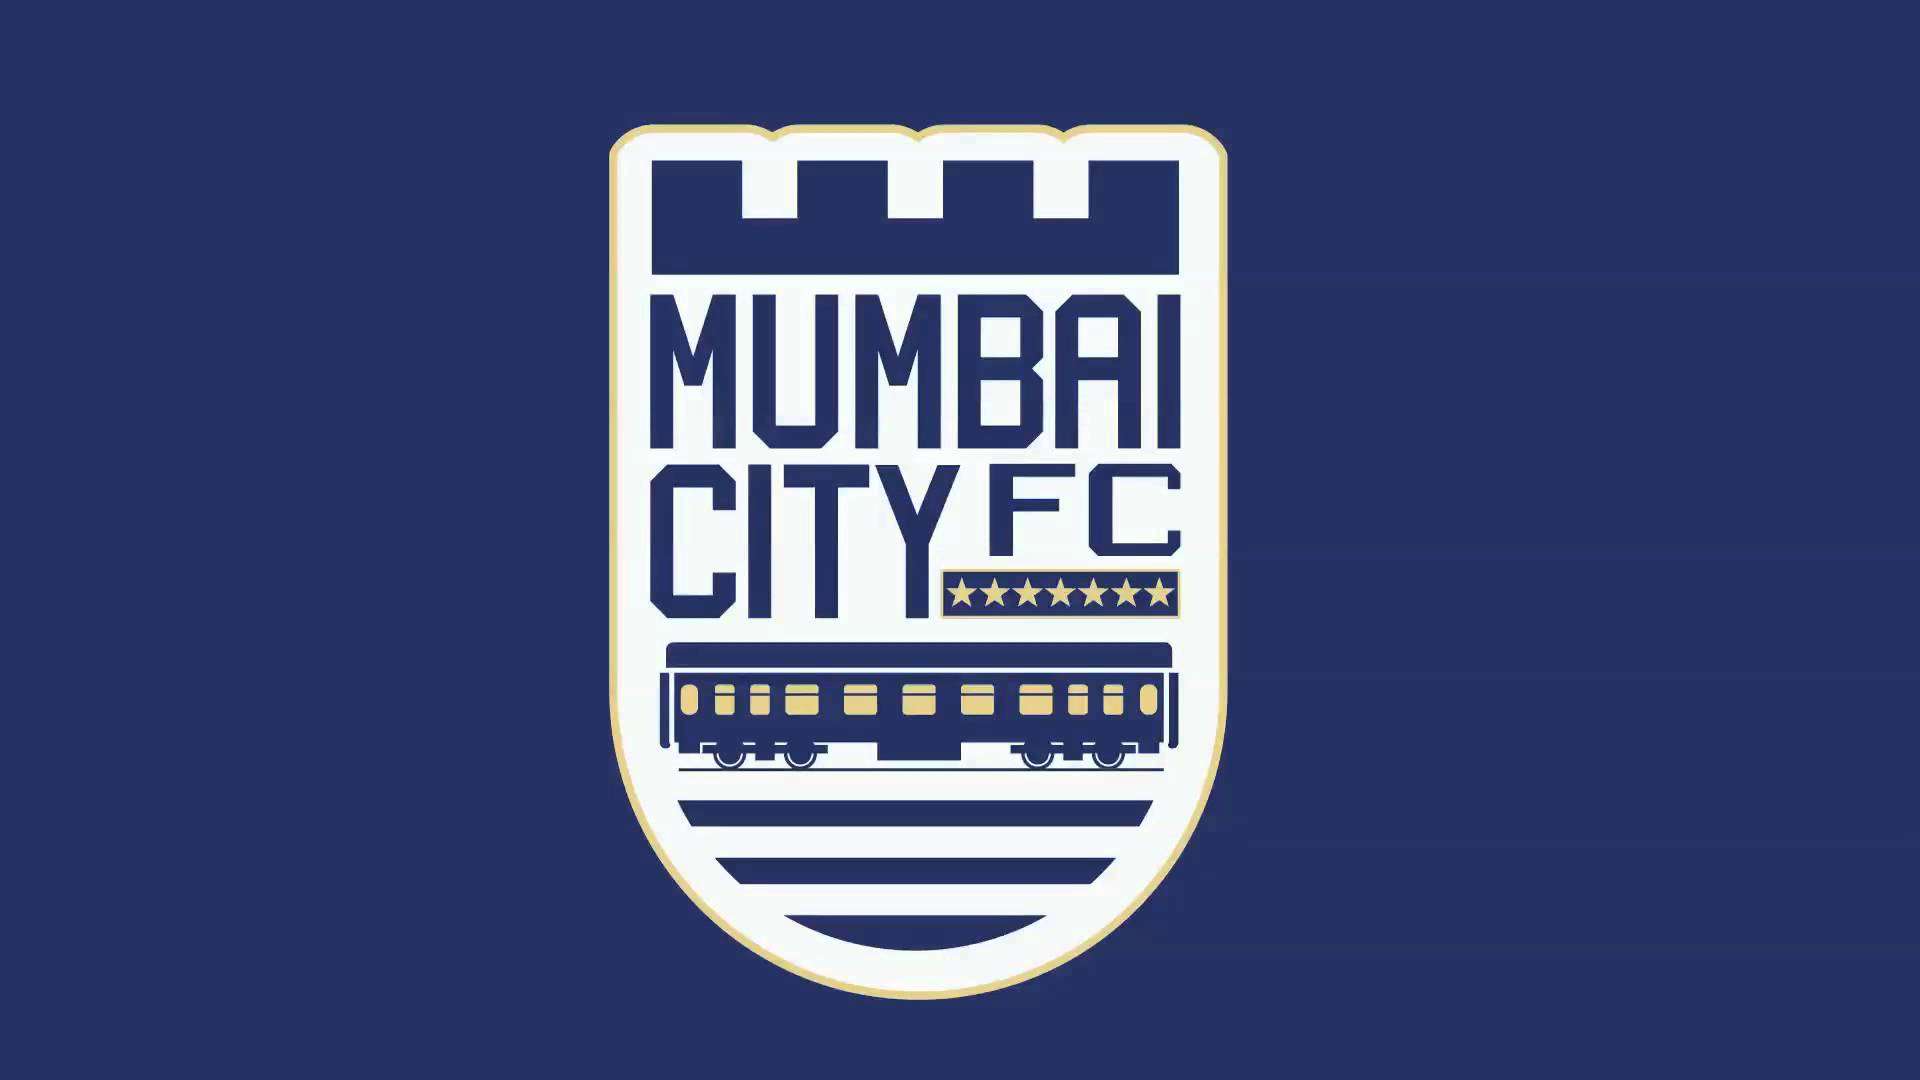 Fc mumbai city Mumbai City